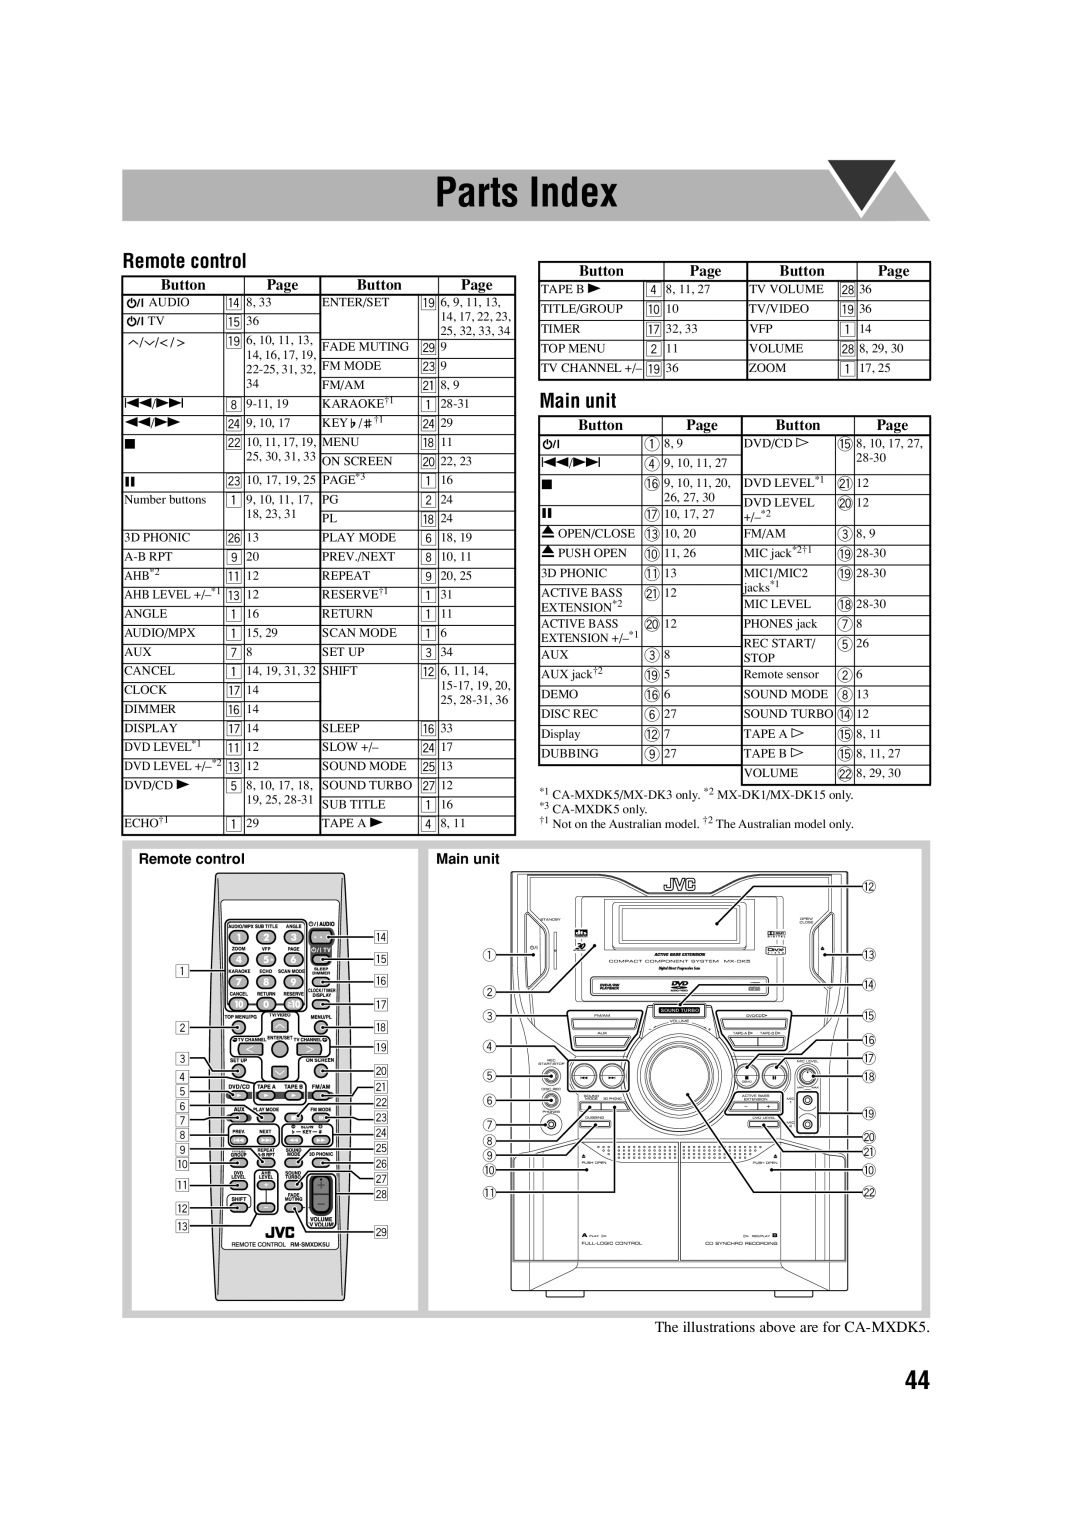 JVC MX-DK3, MX-DK15 manual Parts Index, Remote control, Main unit 